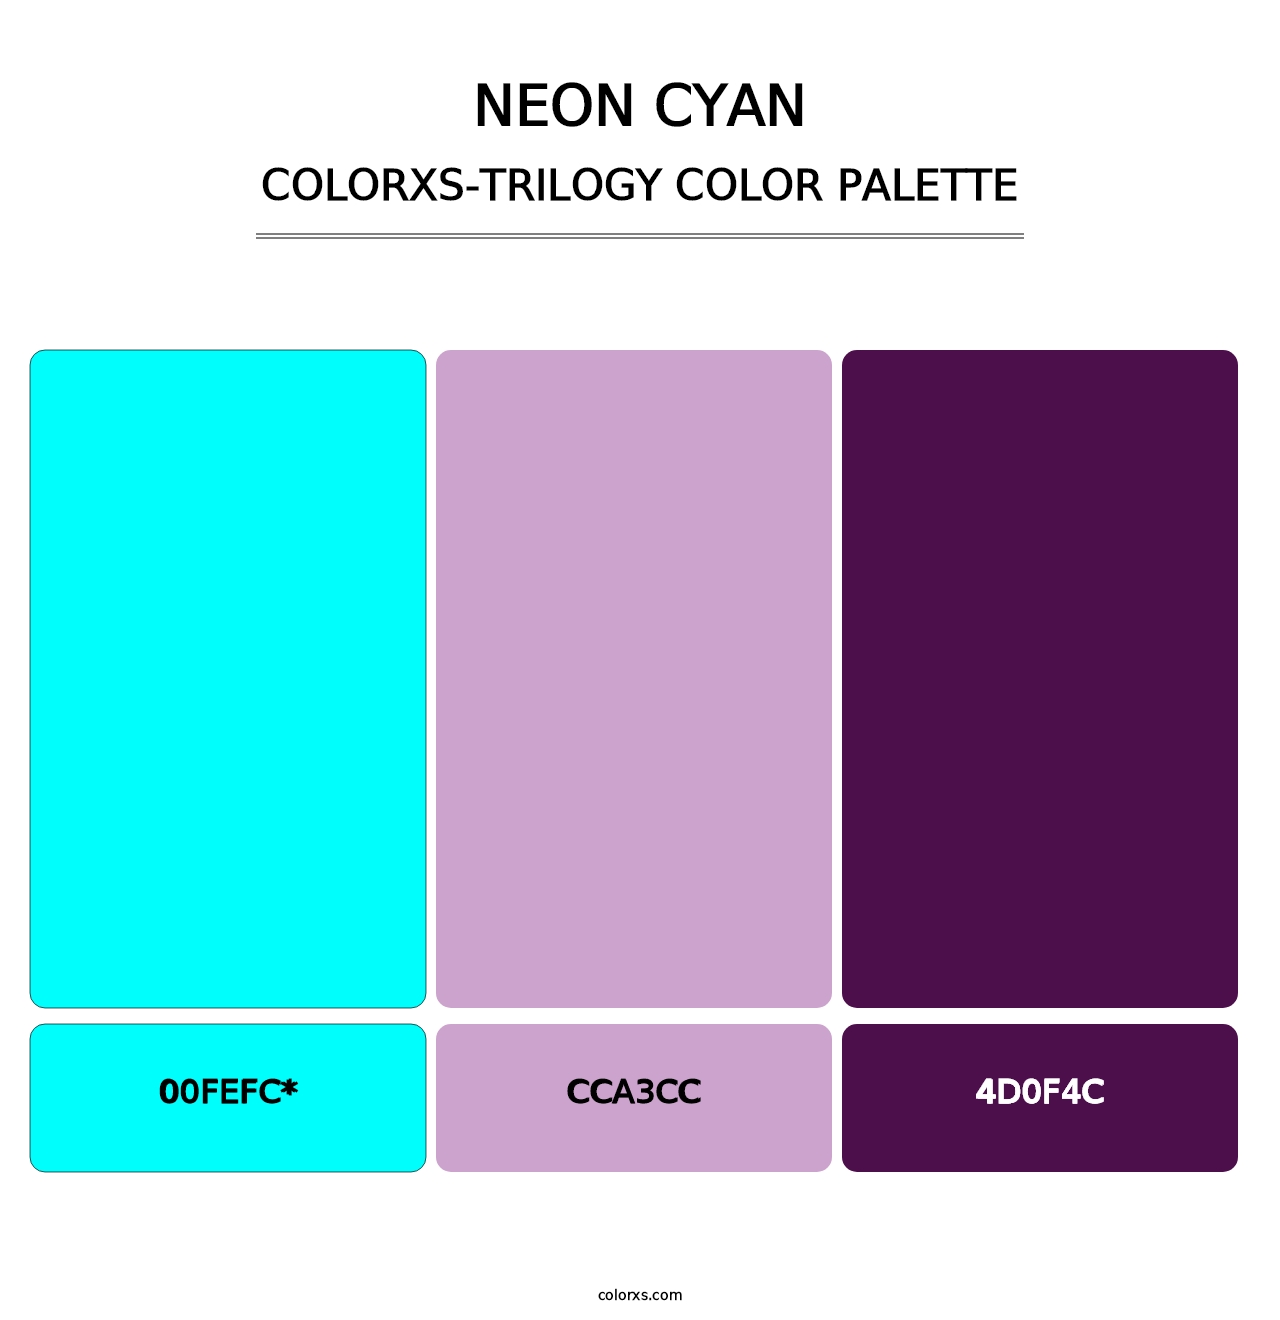 Neon Cyan - Colorxs Trilogy Palette